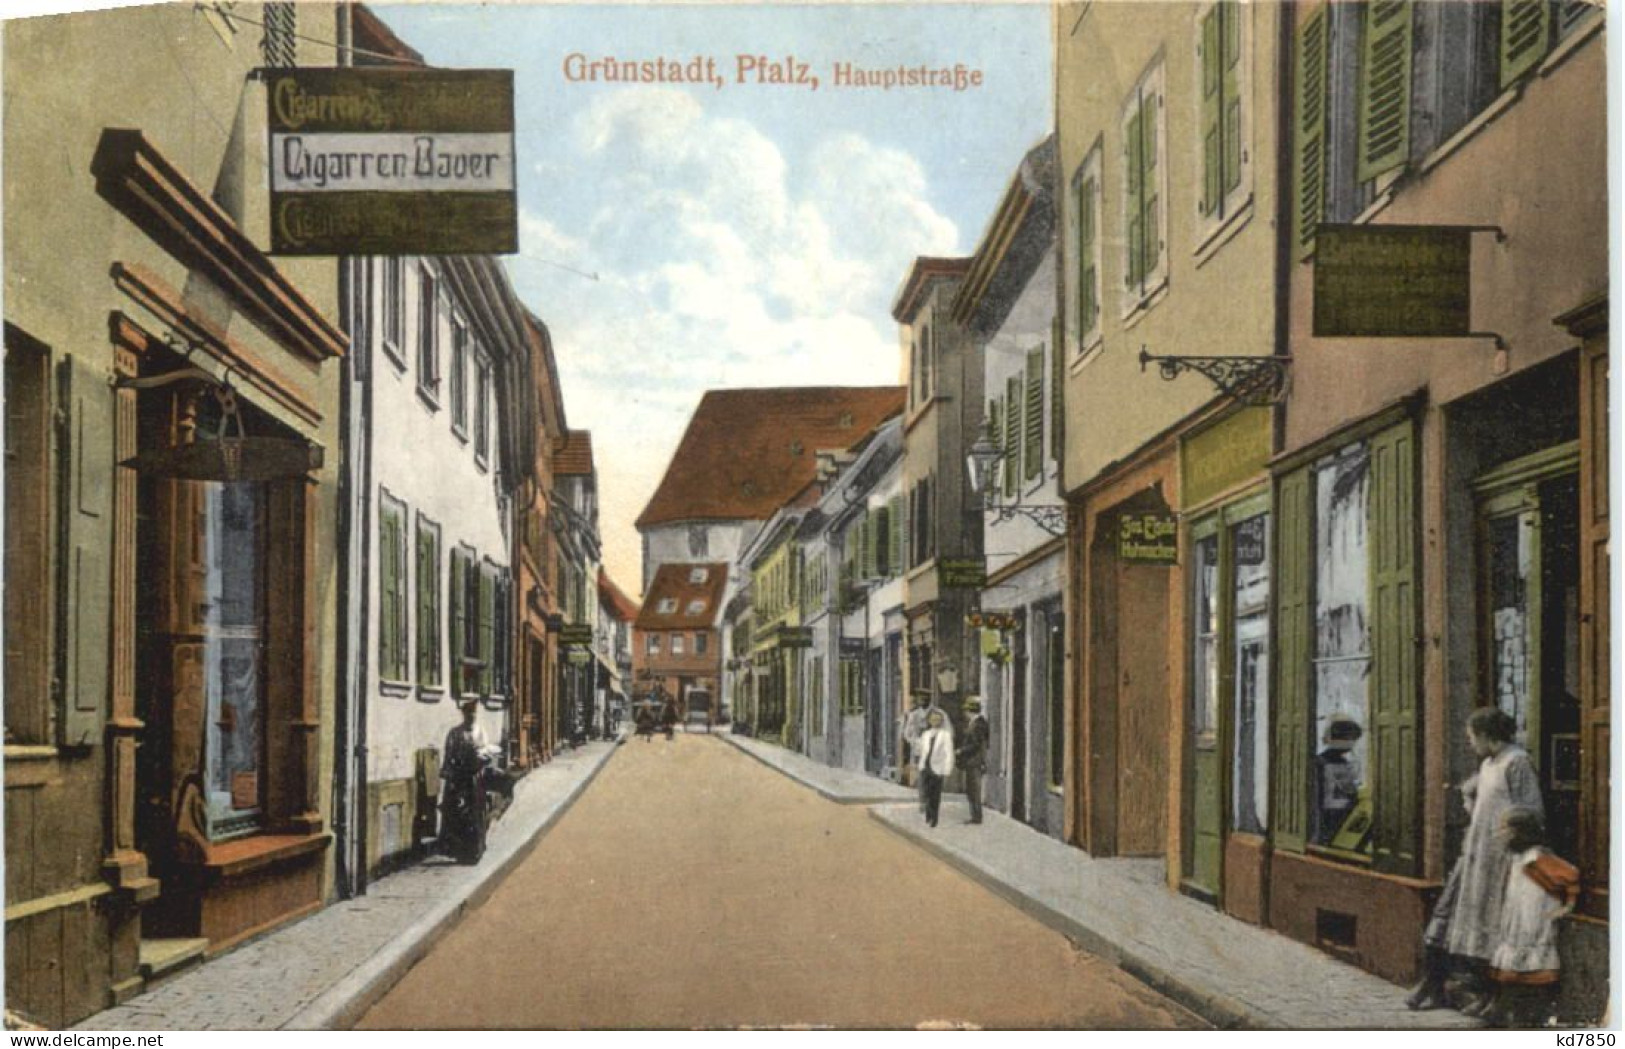 Grünstadt Pfalz - Hauptstrasse - Gruenstadt